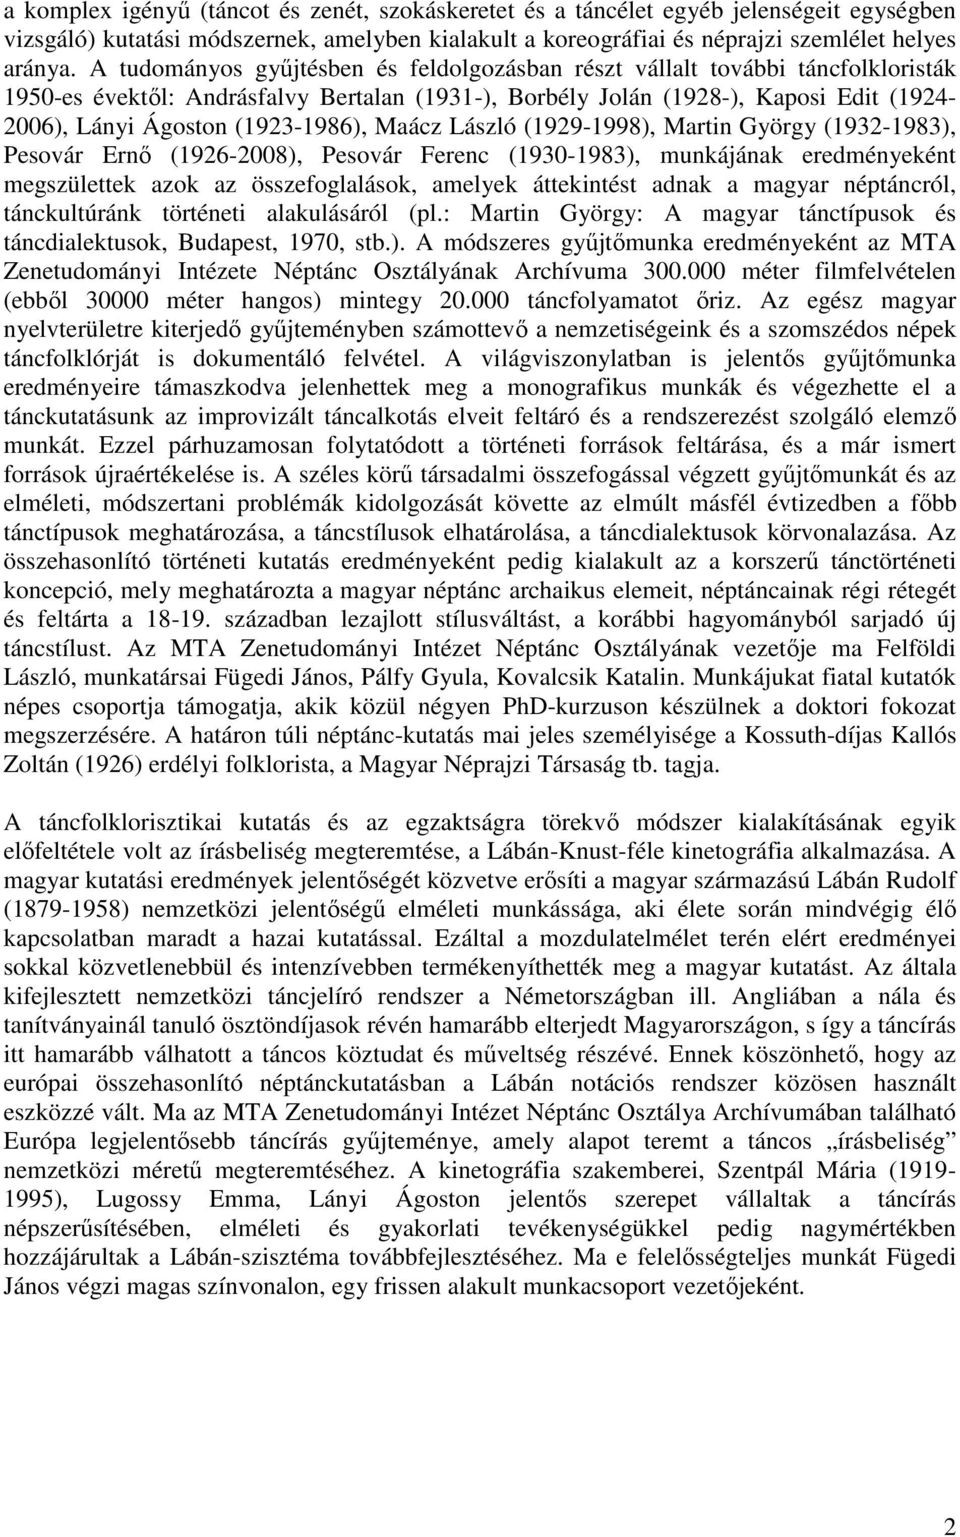 (1923-1986), Maácz László (1929-1998), Martin György (1932-1983), Pesovár Ernı (1926-2008), Pesovár Ferenc (1930-1983), munkájának eredményeként megszülettek azok az összefoglalások, amelyek